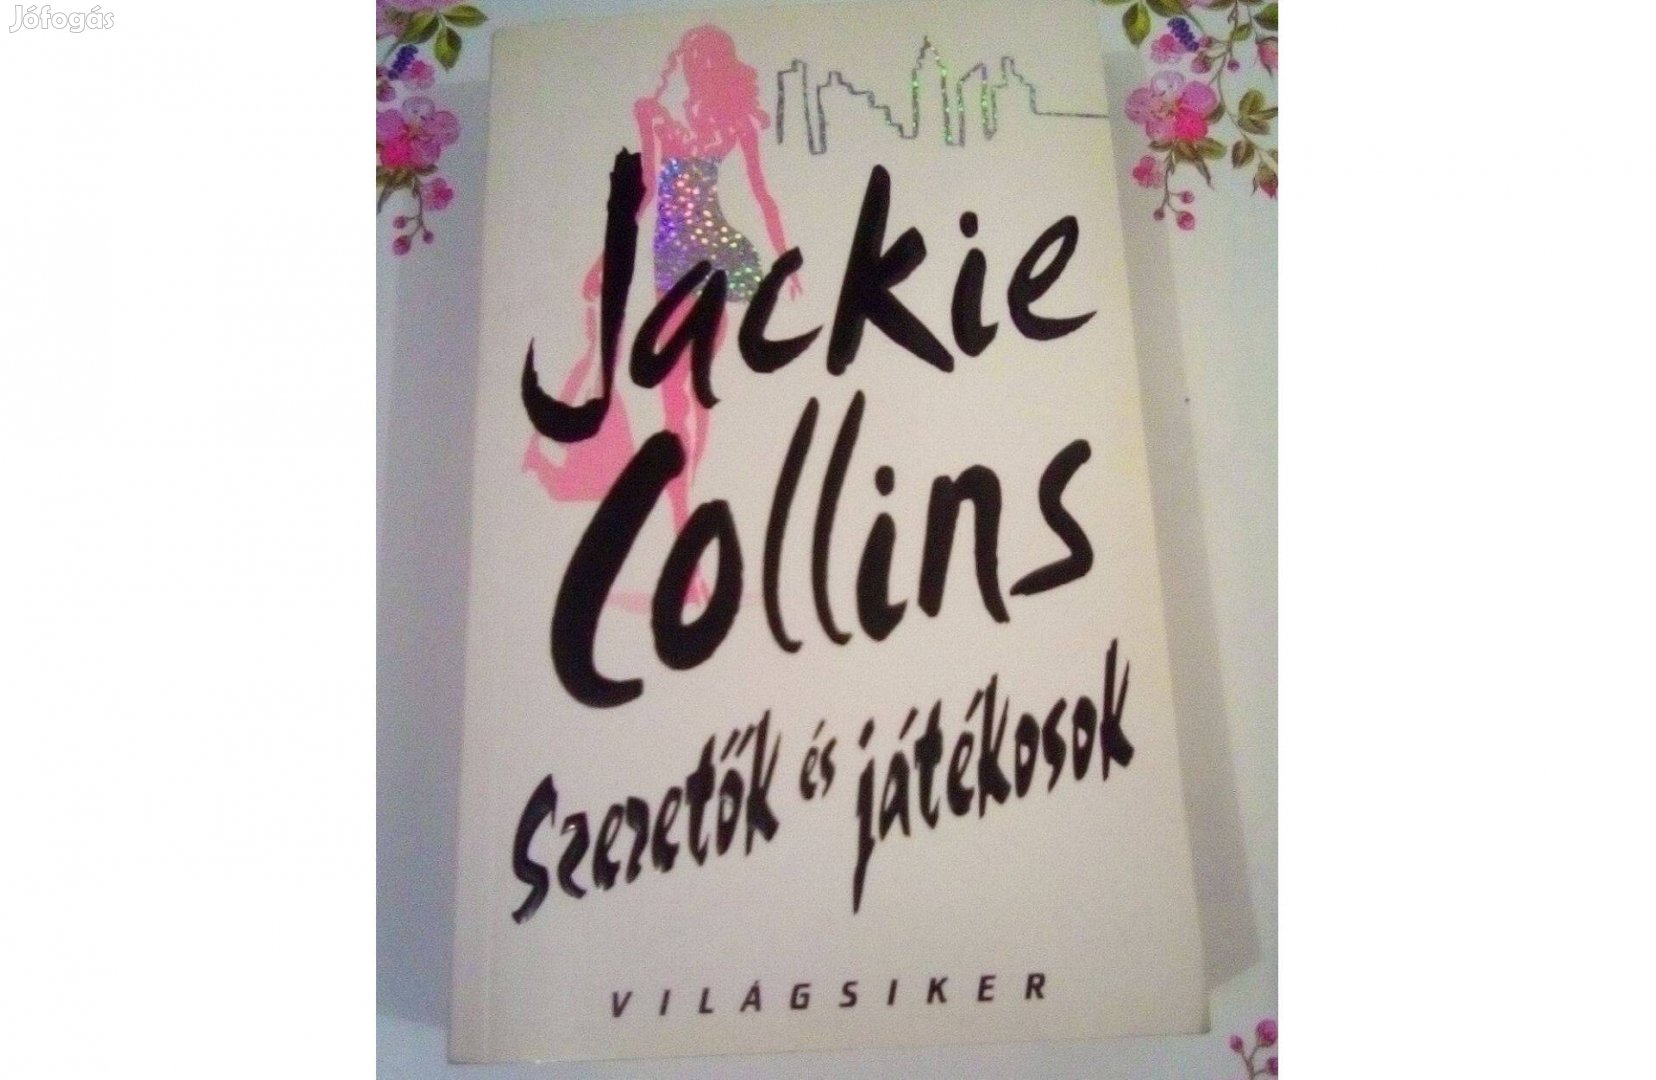 8 db Jackie Collins könyv